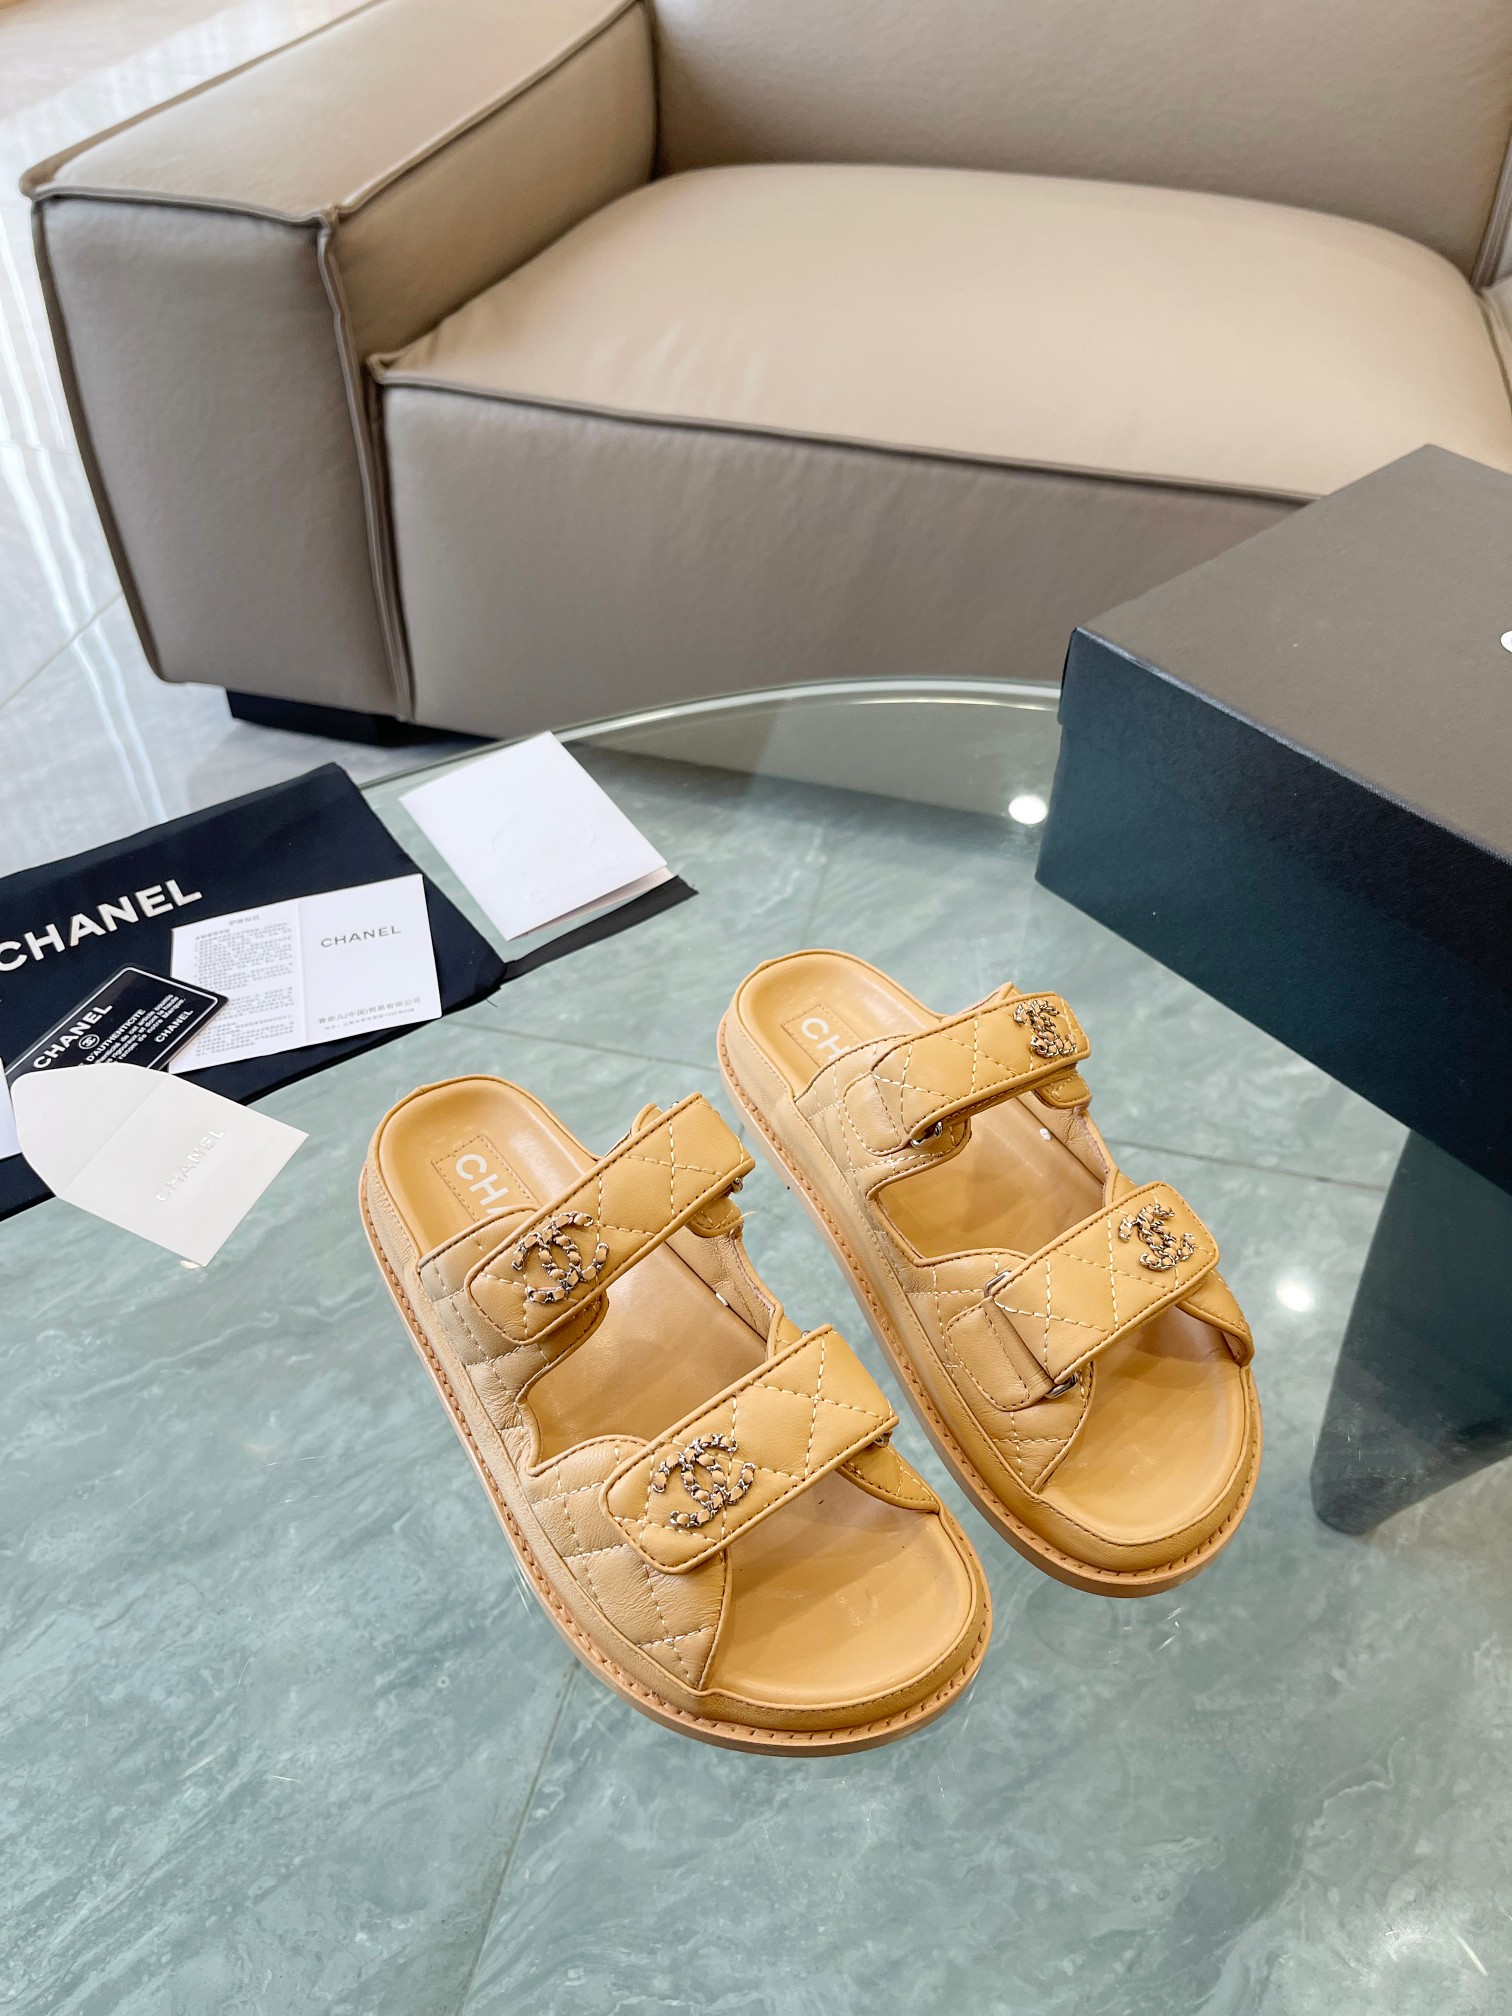 Chanel Comprar Zapatos Sandalias Pantuflas Patrón de litchi Hardware oro Cuero vaca Dermis Piel oveja Laca Resina Colección primavera – verano Playa